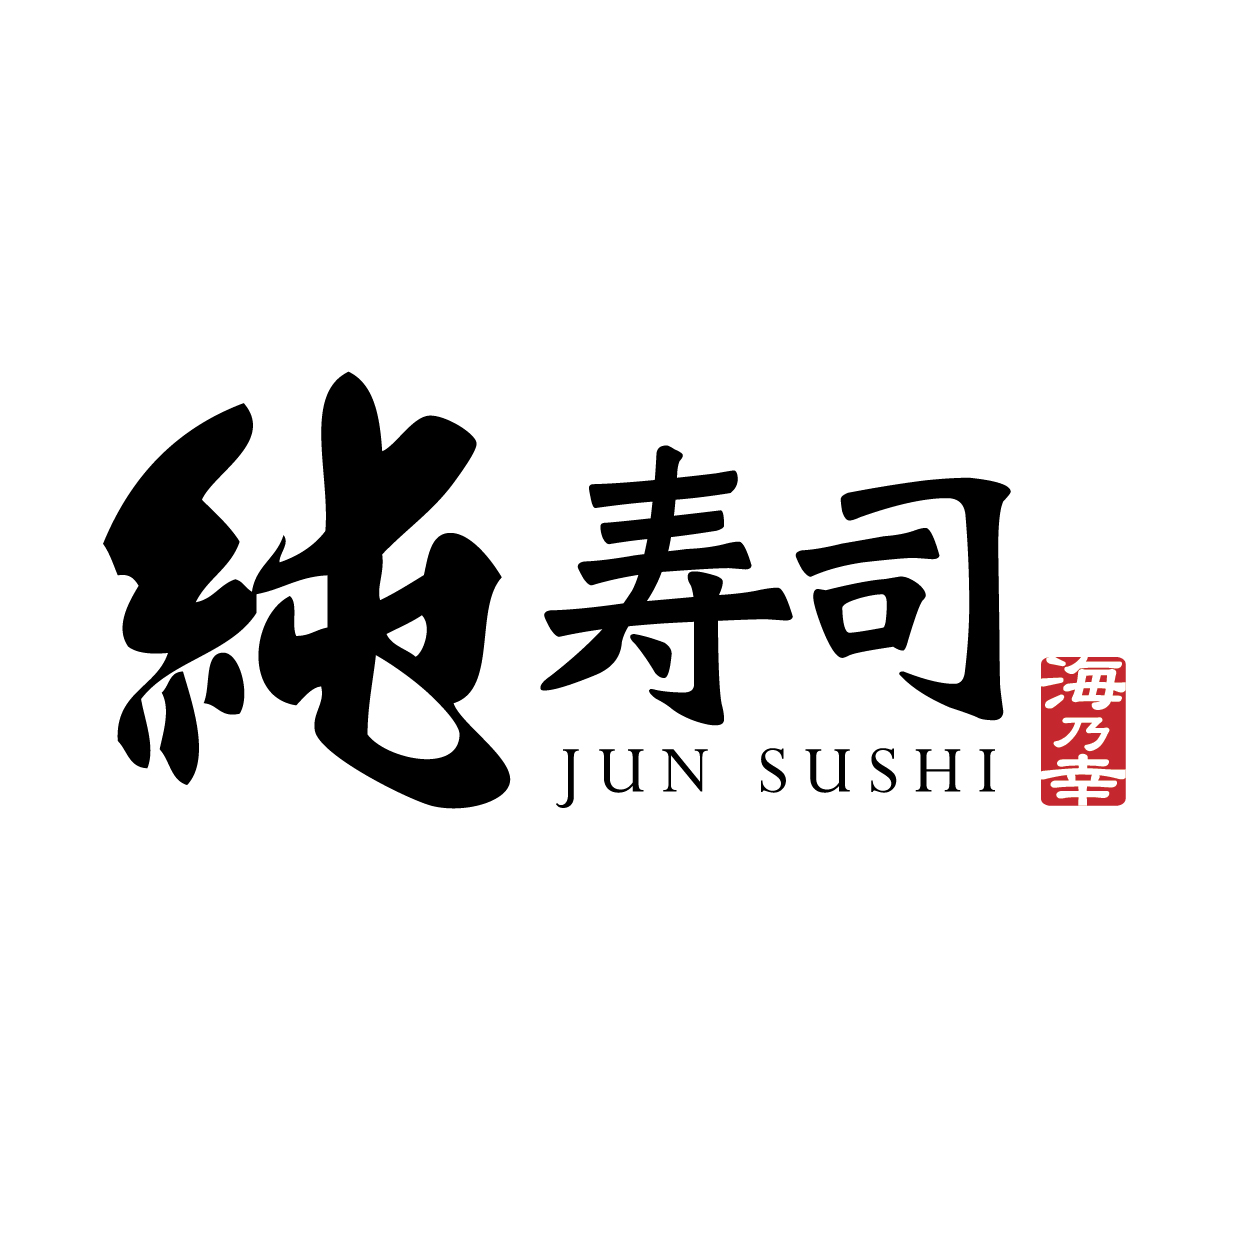 純寿司 JUN SUSHI